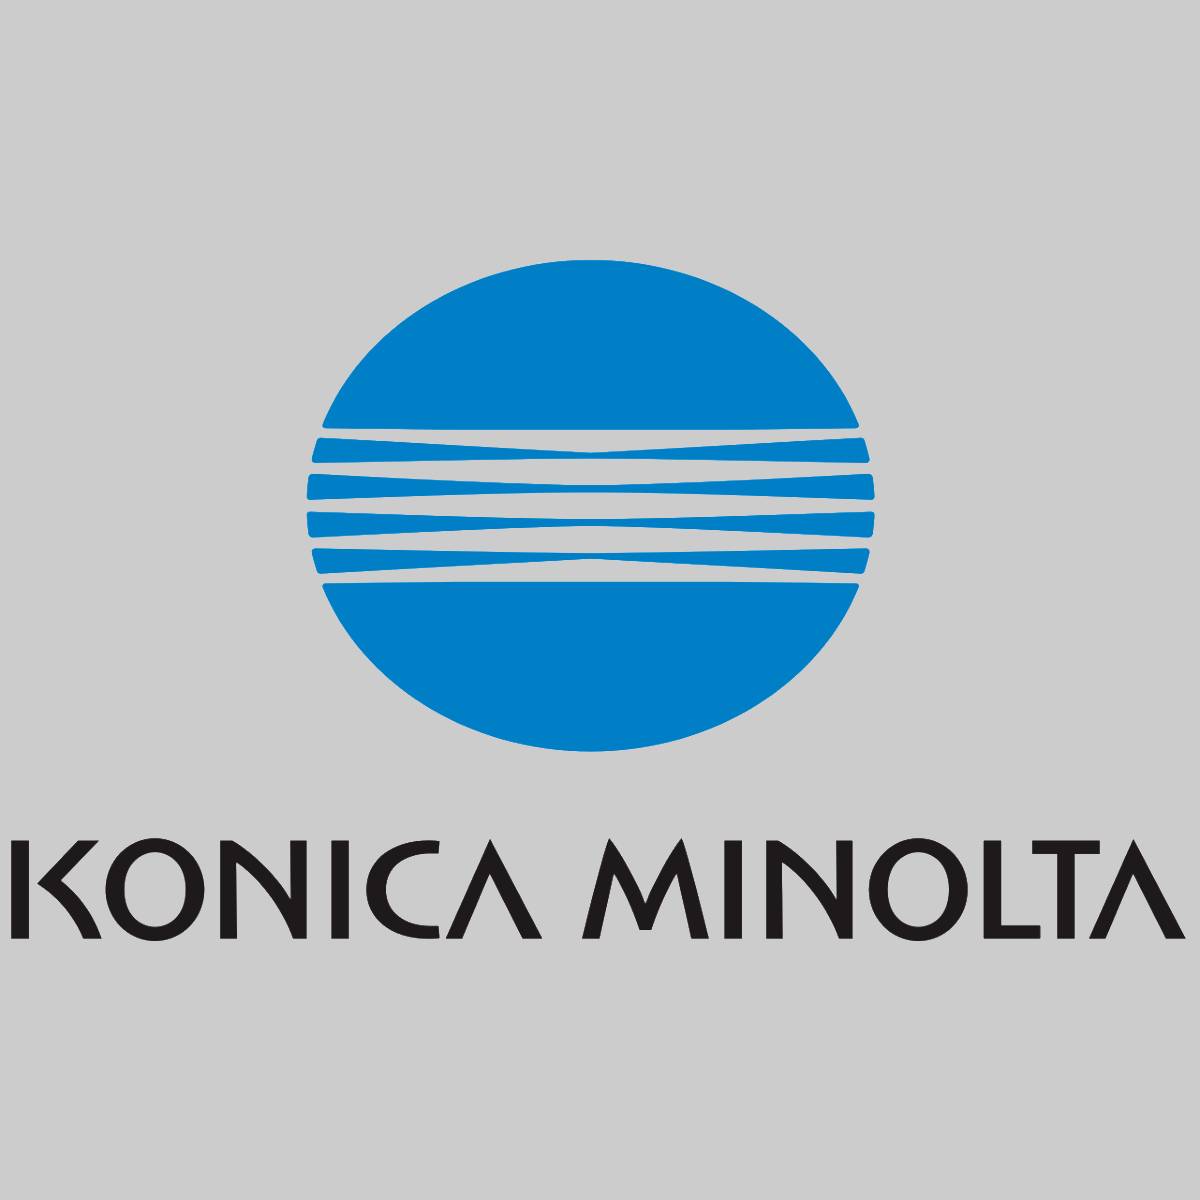 Konica Minolta DV614K Développeur Noir A3VX600 pour AccurioPress C1060 1070 3070